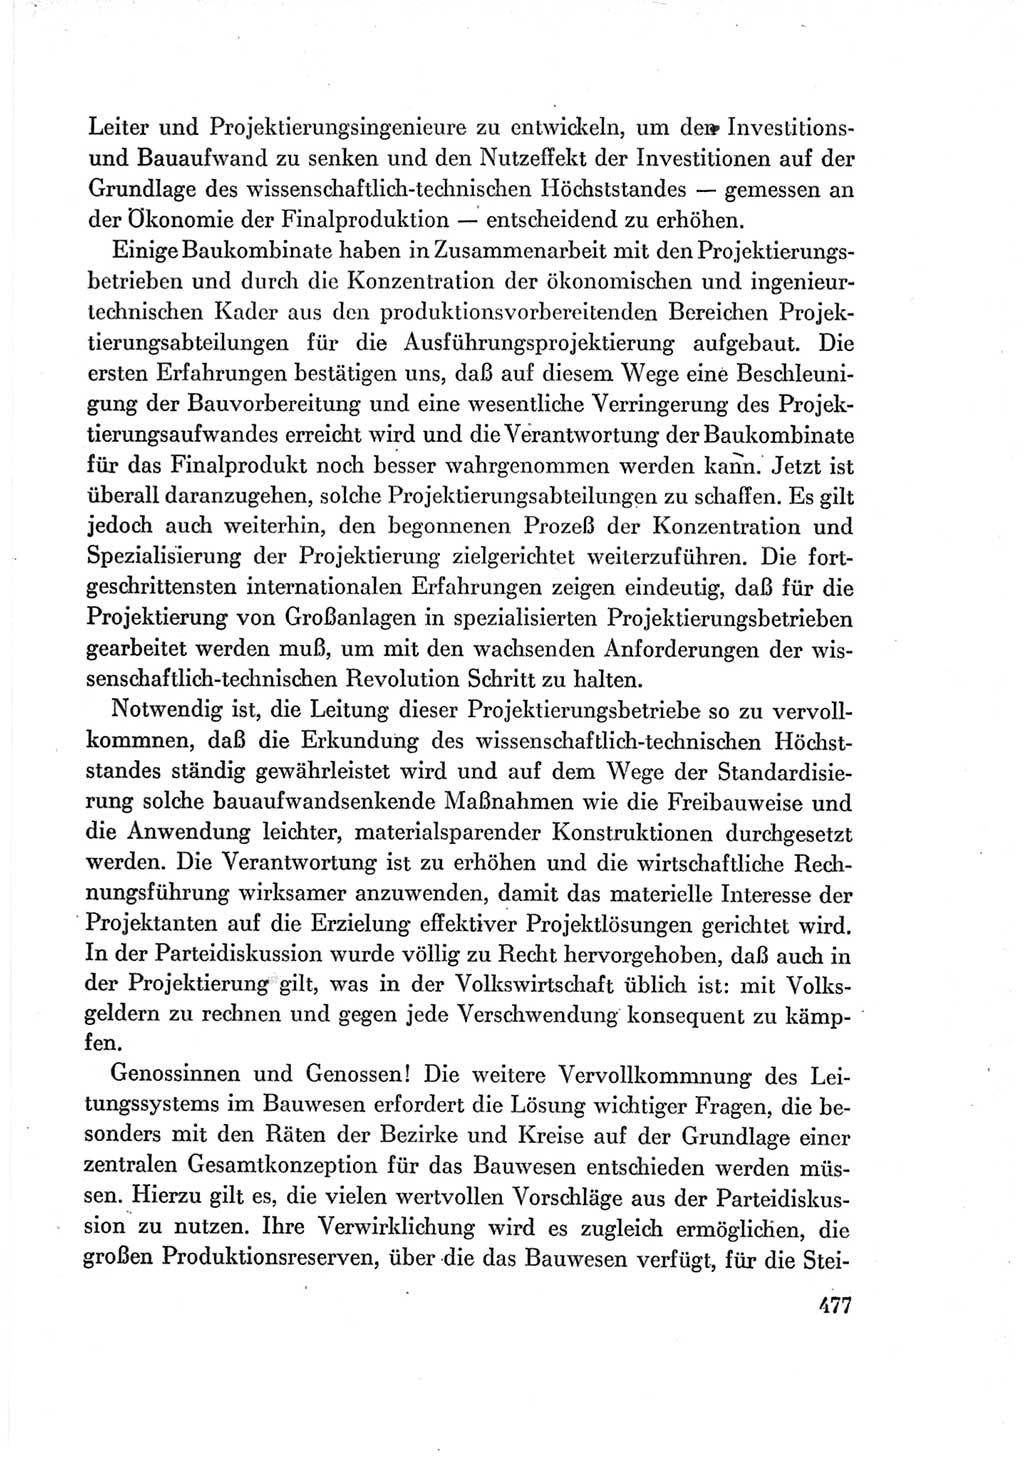 Protokoll der Verhandlungen des Ⅶ. Parteitages der Sozialistischen Einheitspartei Deutschlands (SED) [Deutsche Demokratische Republik (DDR)] 1967, Band Ⅰ, Seite 477 (Prot. Verh. Ⅶ. PT SED DDR 1967, Bd. Ⅰ, S. 477)